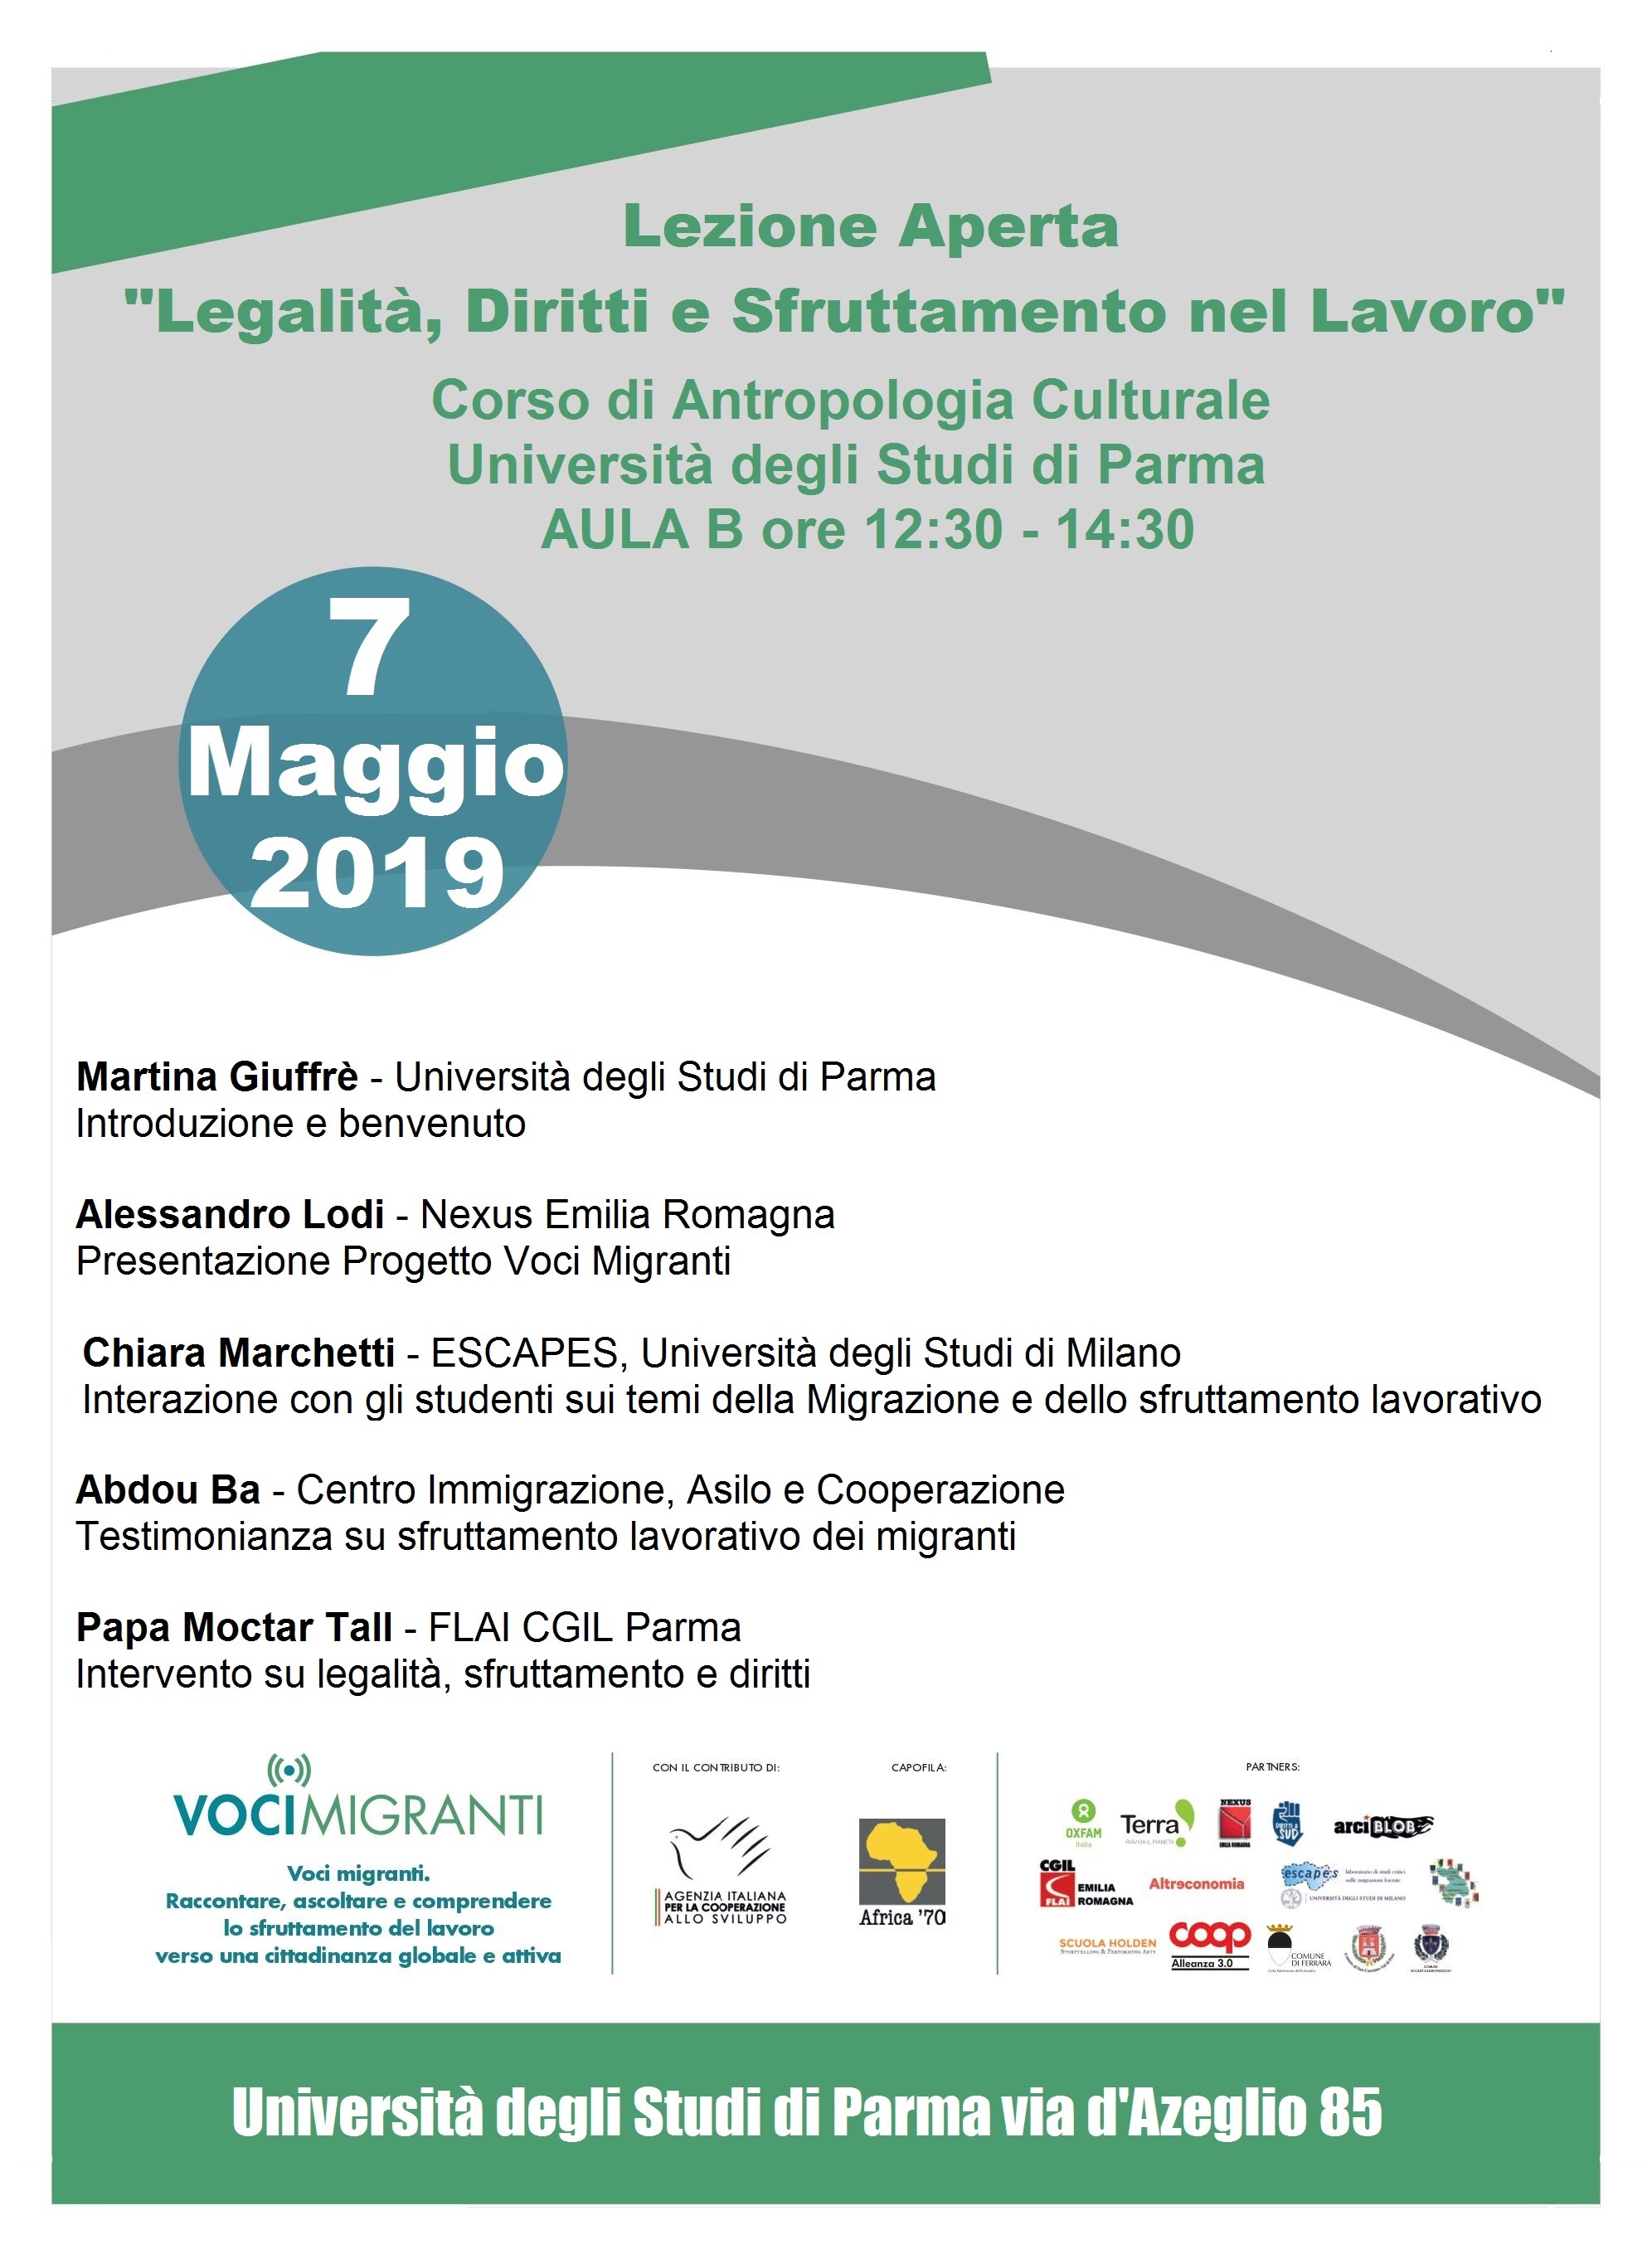 Voci migranti: Lezione aperta “Legalità, diritti e sfruttamento nel lavoro”, Parma 7 maggio